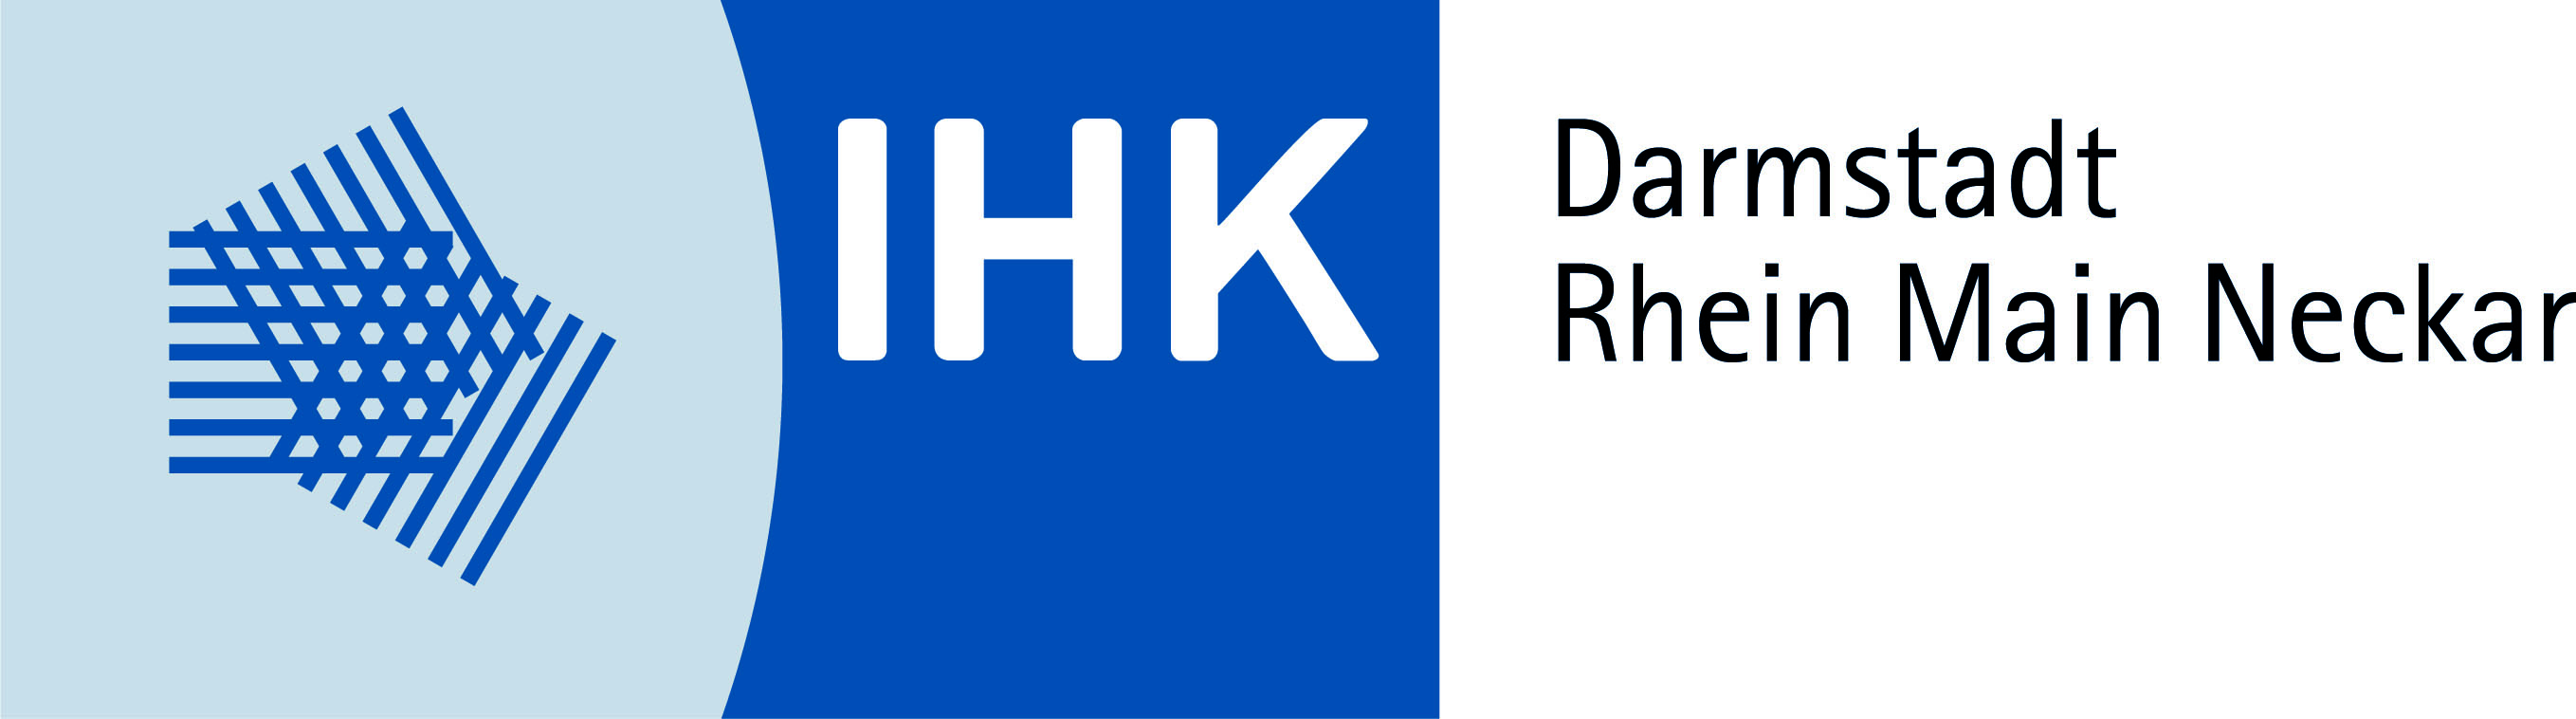 Cluster Partner Logo IHK Darmstadt Thein Main Neckar